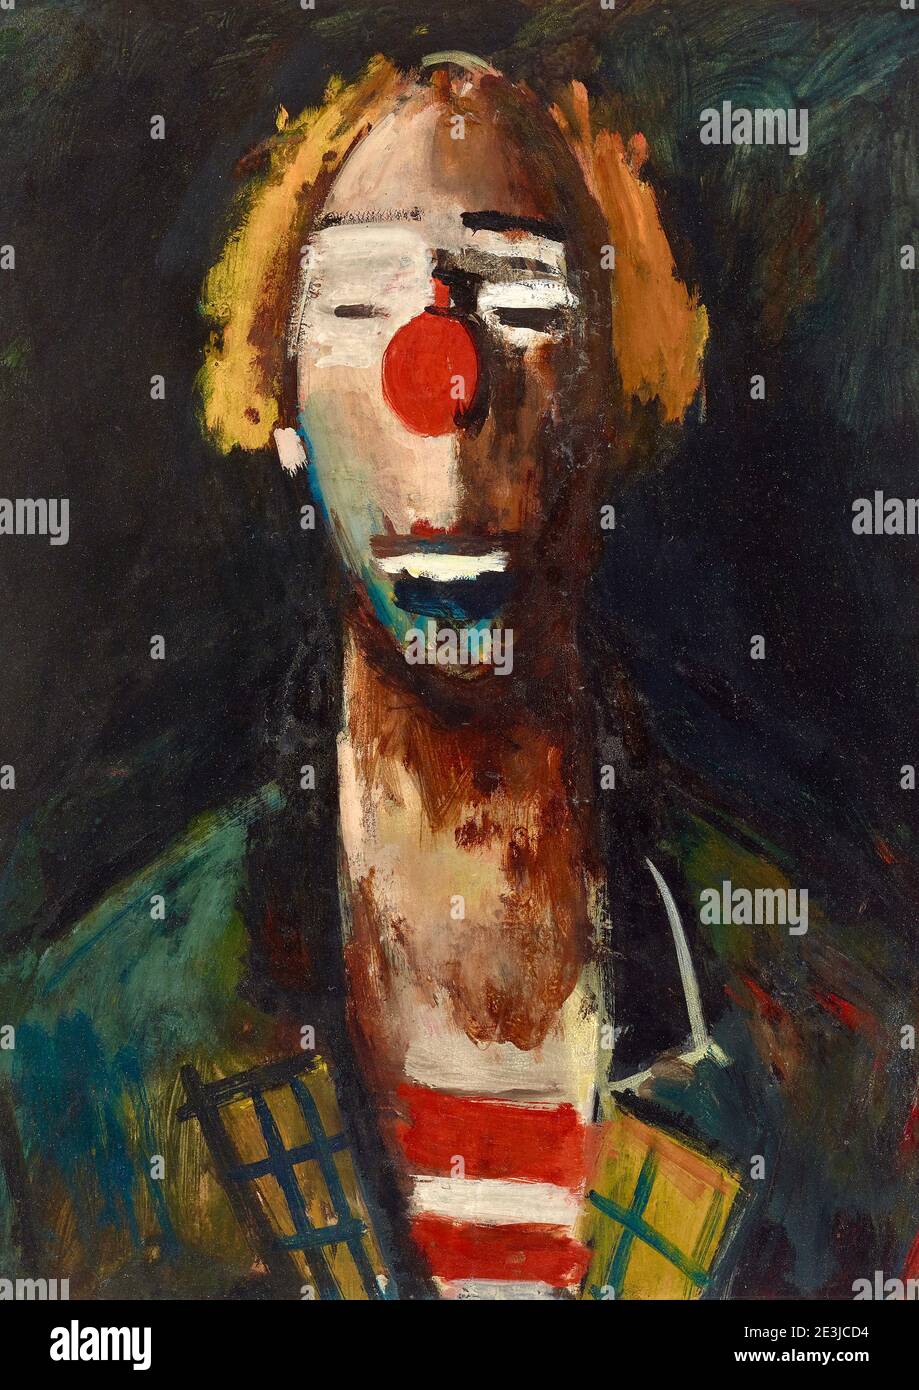 Œuvre de Joseph Kutter intitulée tête de clown ou tête de clown depuis 1937. Le clown est en costume avec un nez rouge proéminent. Banque D'Images